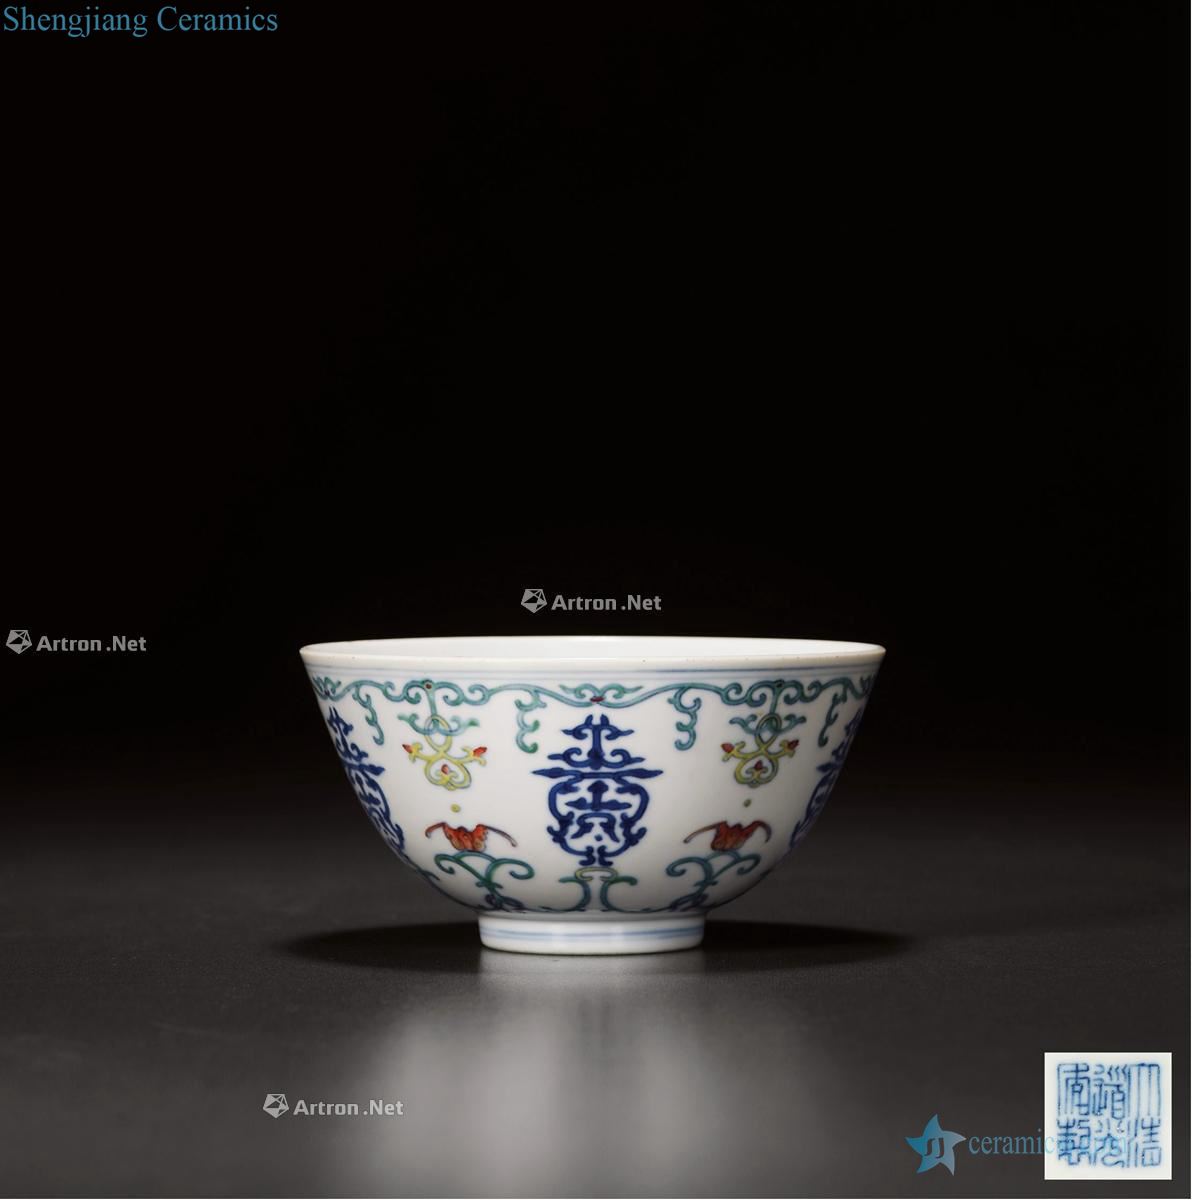 Qing daoguang dou shou word green-splashed bowls